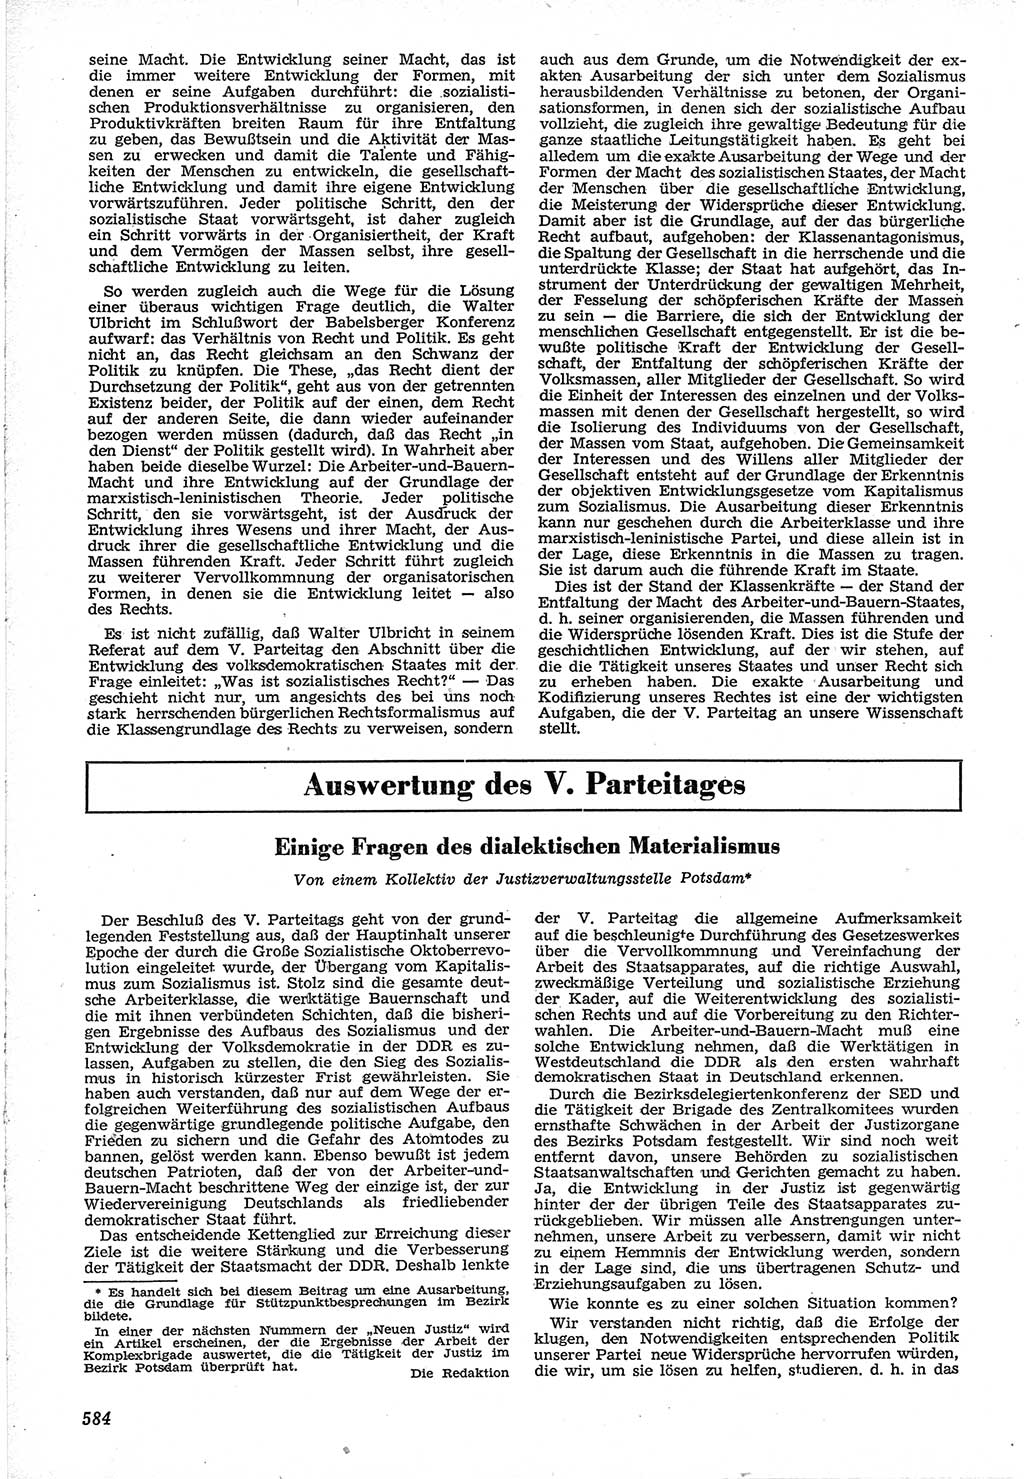 Neue Justiz (NJ), Zeitschrift für Recht und Rechtswissenschaft [Deutsche Demokratische Republik (DDR)], 12. Jahrgang 1958, Seite 584 (NJ DDR 1958, S. 584)